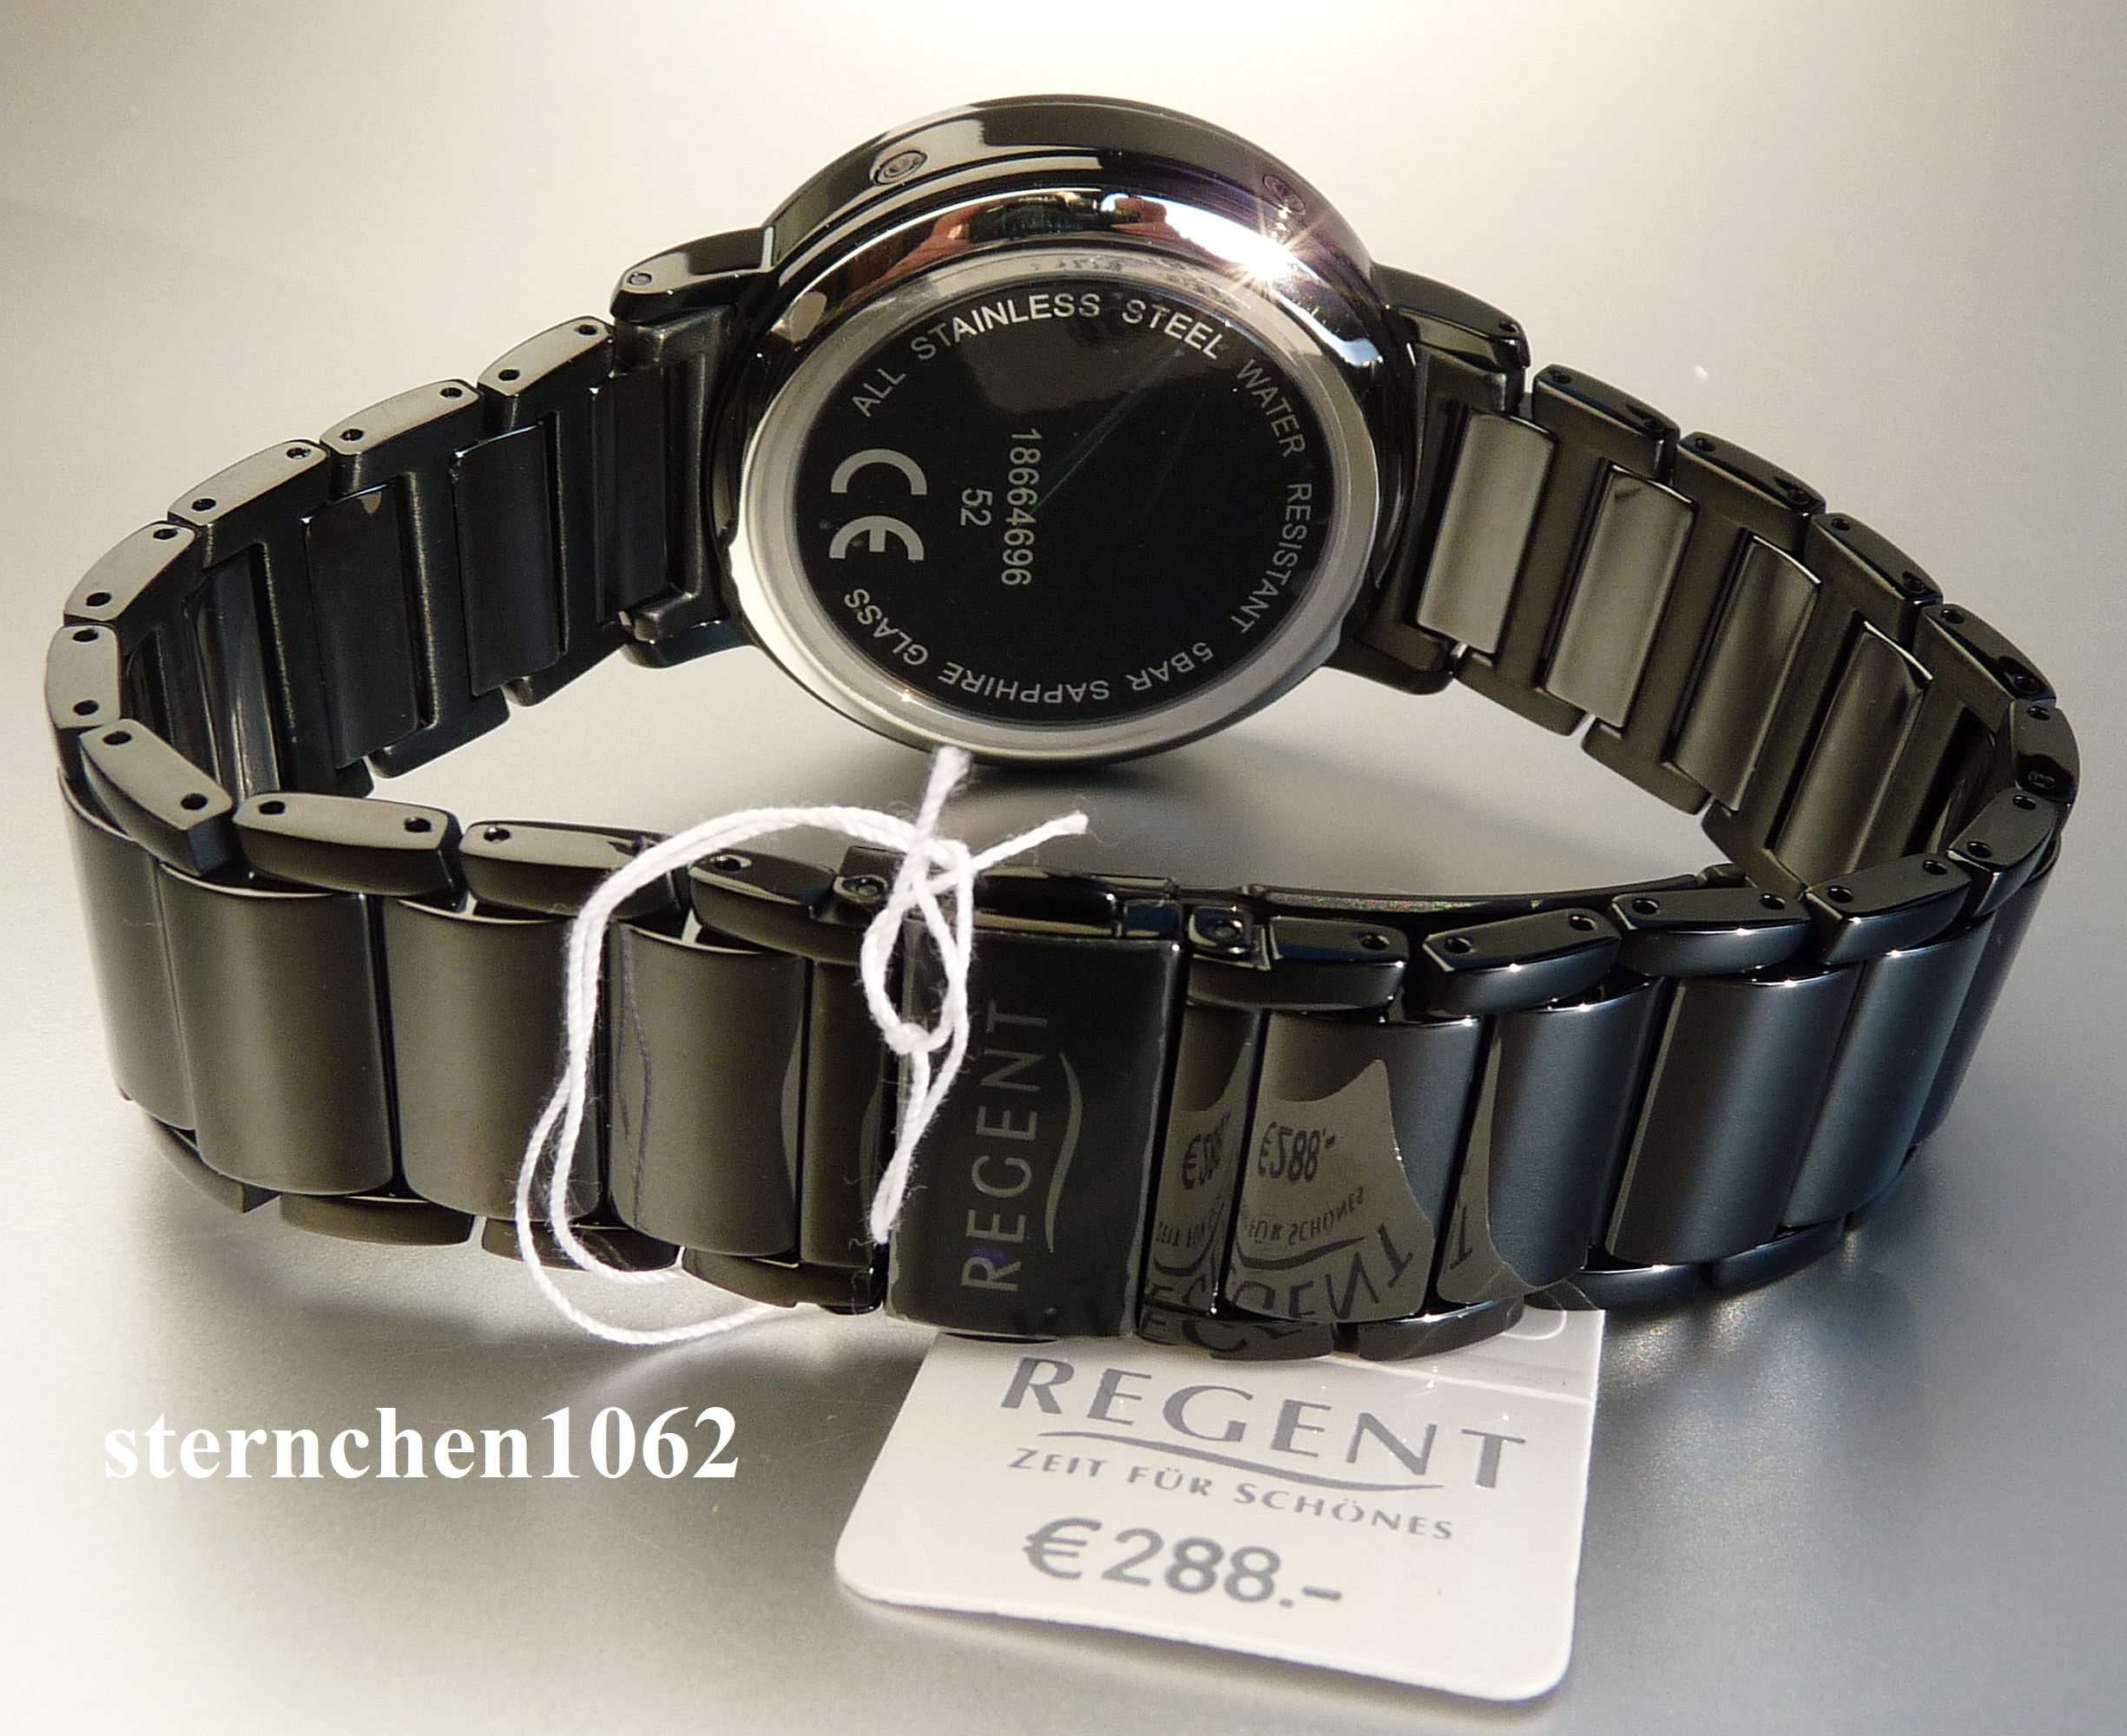 Sternchen 1062 - Regent * Men's watch * 11030181/FR255 * Steel/Ceramics *